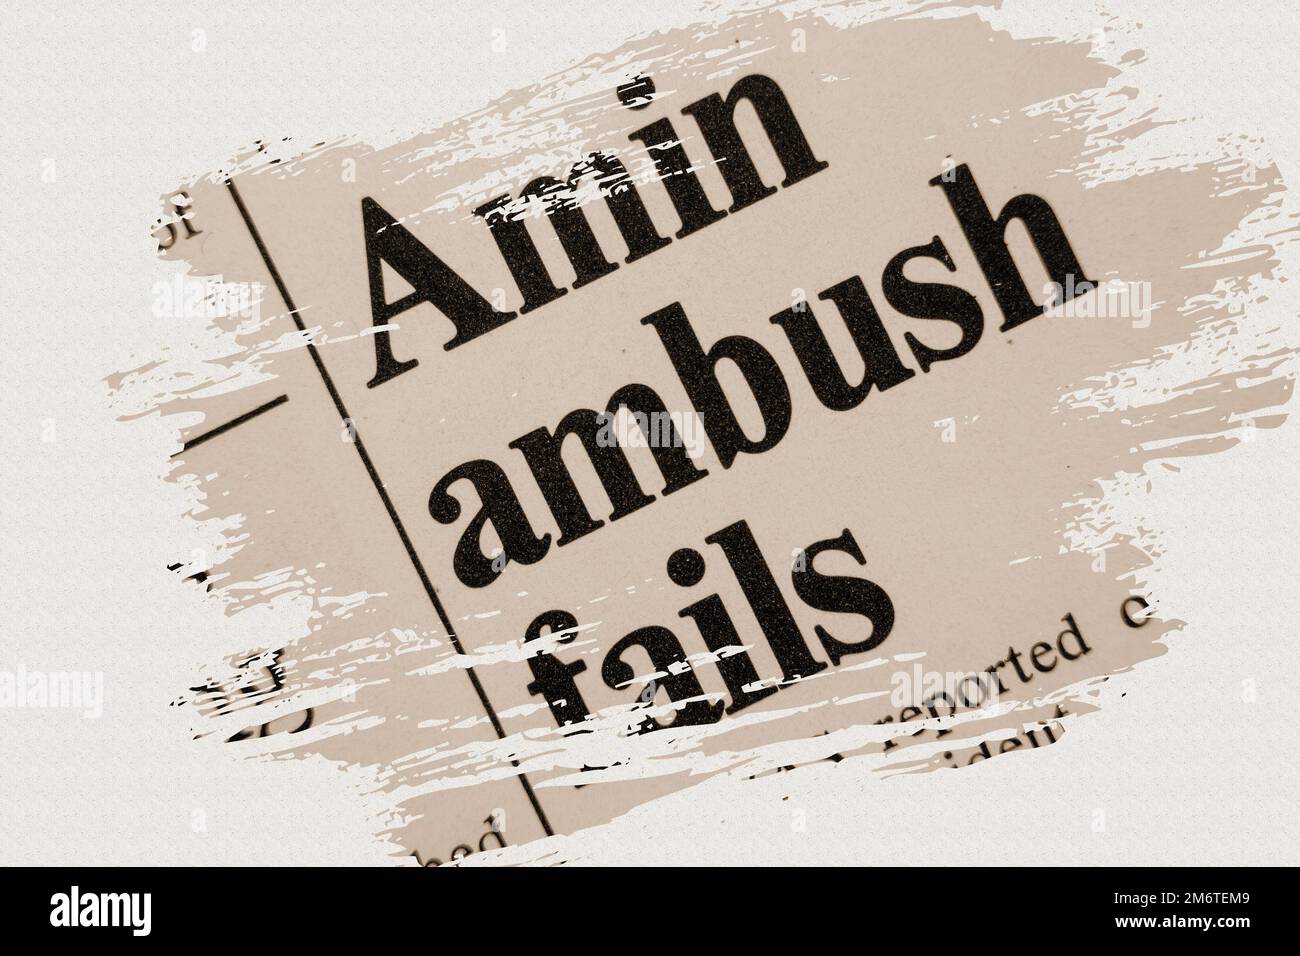 Amin ambush fallisce - notizia storia dal titolo dell'articolo del giornale 1975 con sovrapposizione in seppia Foto Stock